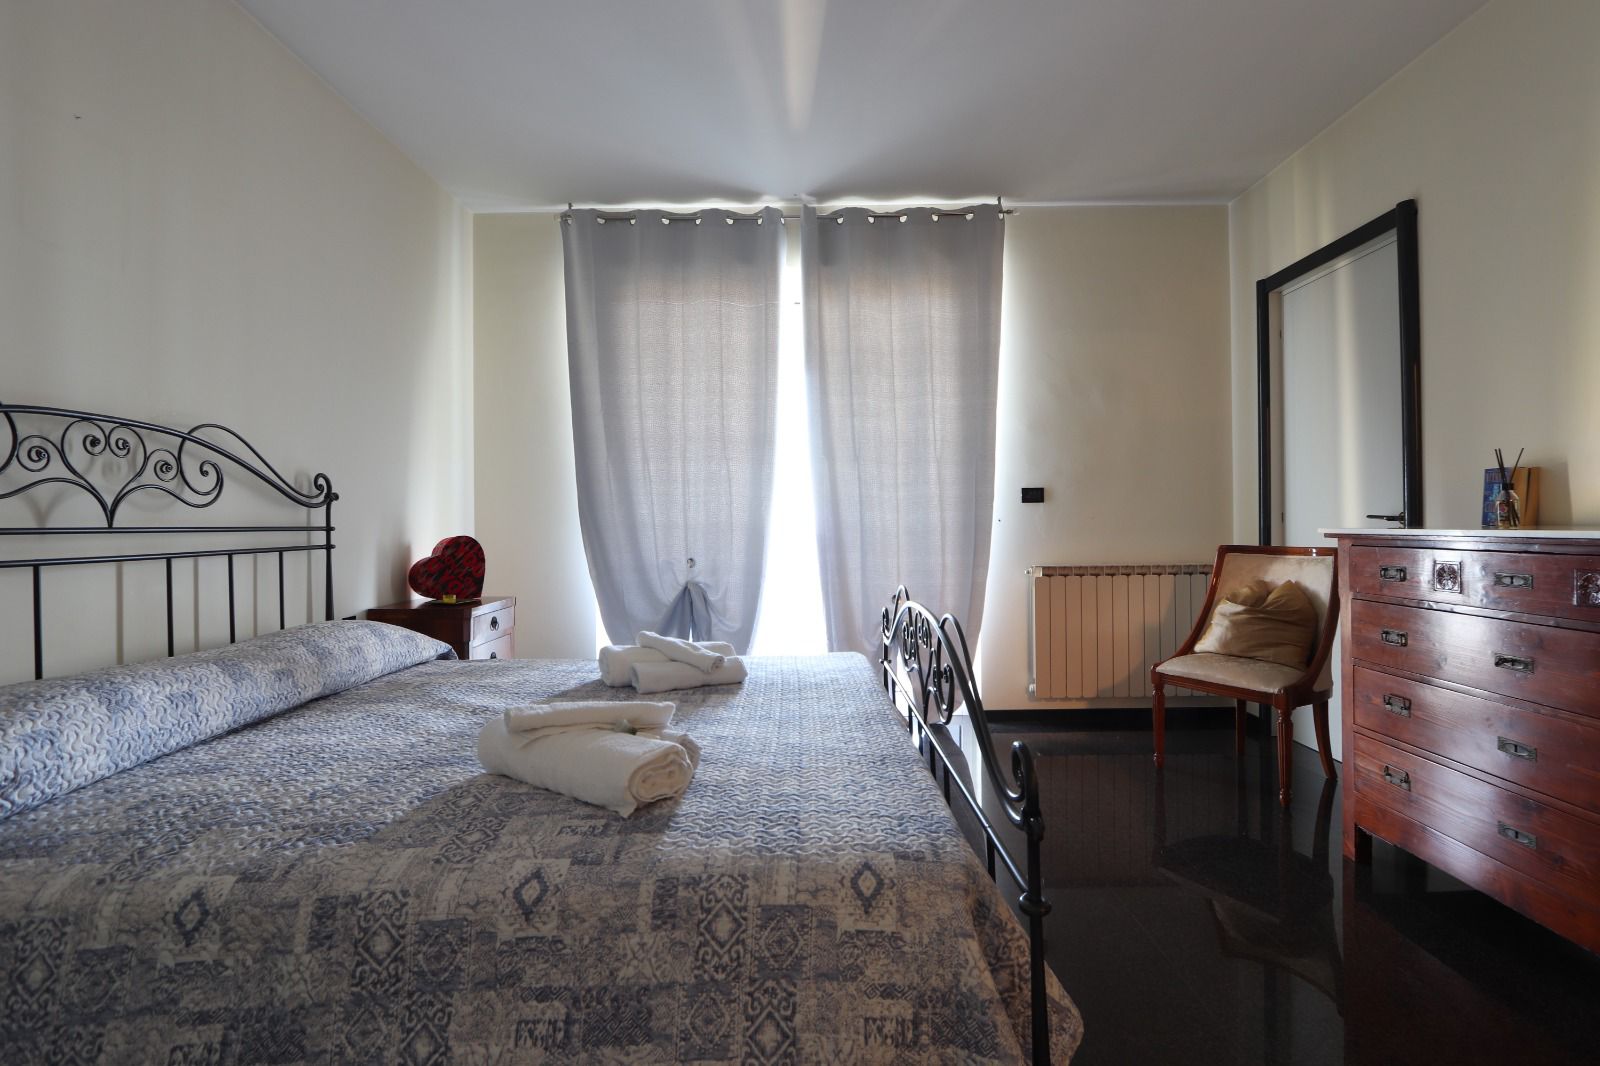  comfort nella nostra camera accogliente e confortevole presso il Bed and Breakfast Pescara Colli.<br />
